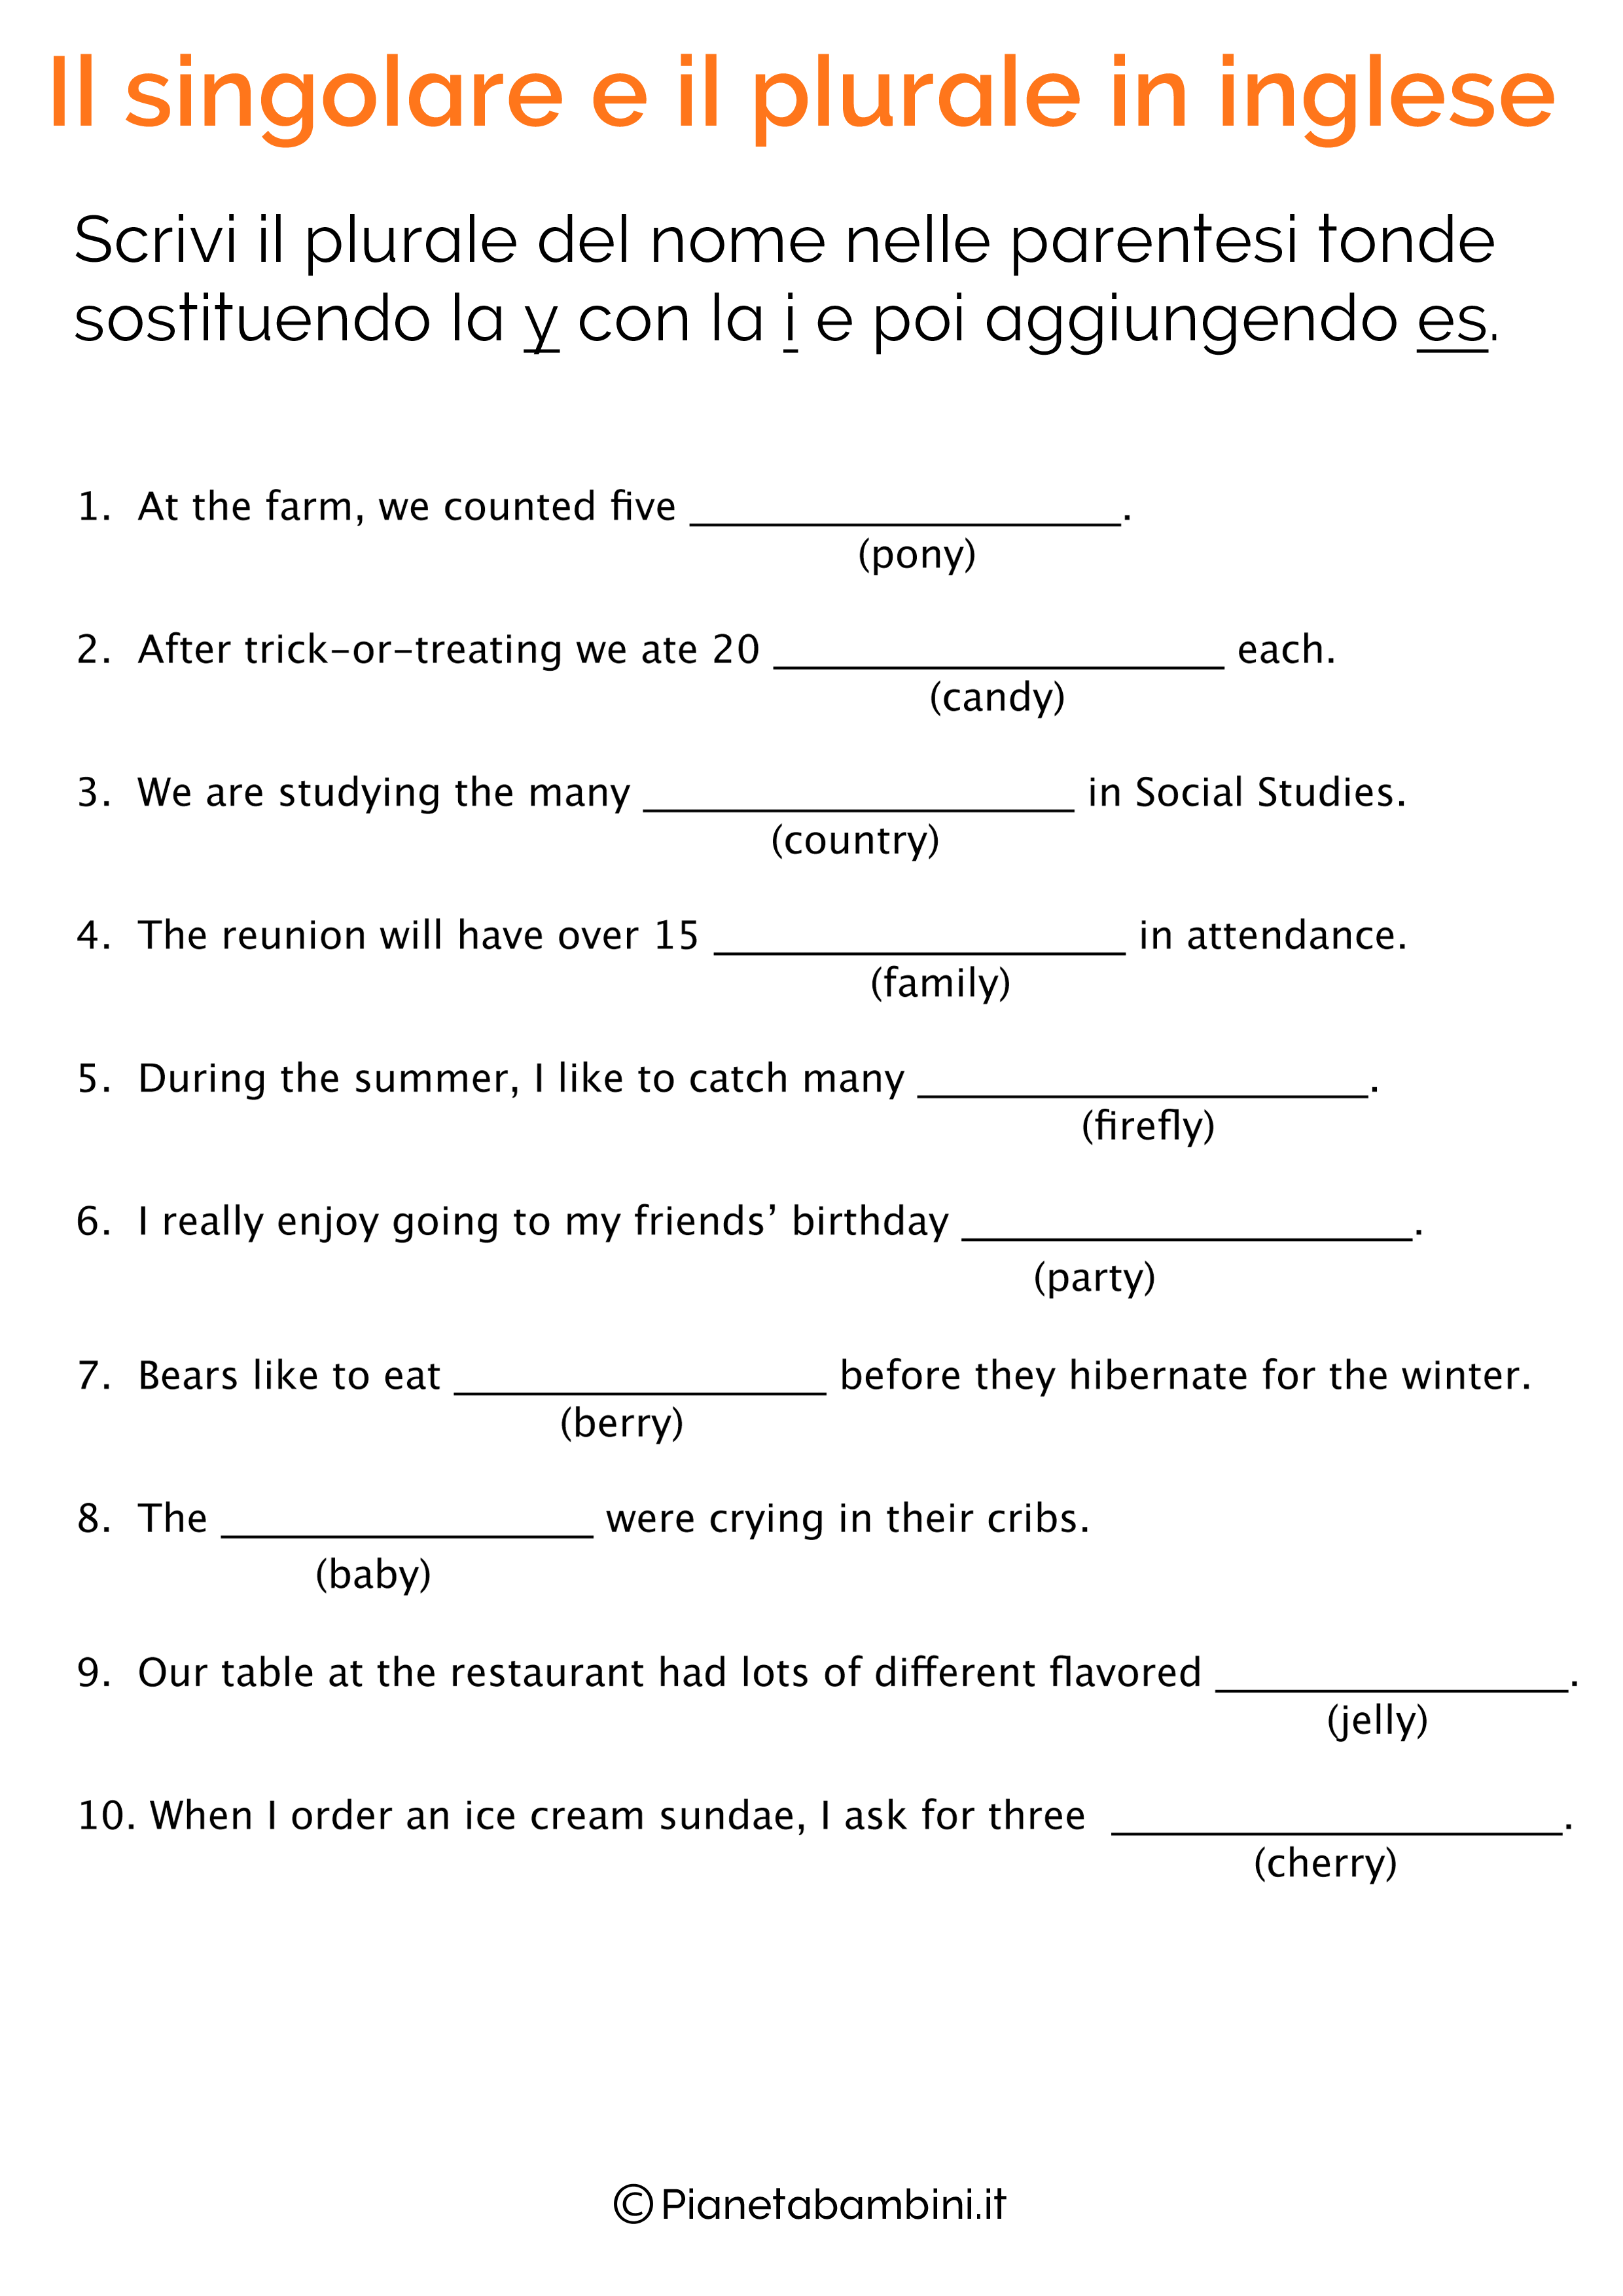 Esercizi sul singolare e plurale in inglese pagina 12